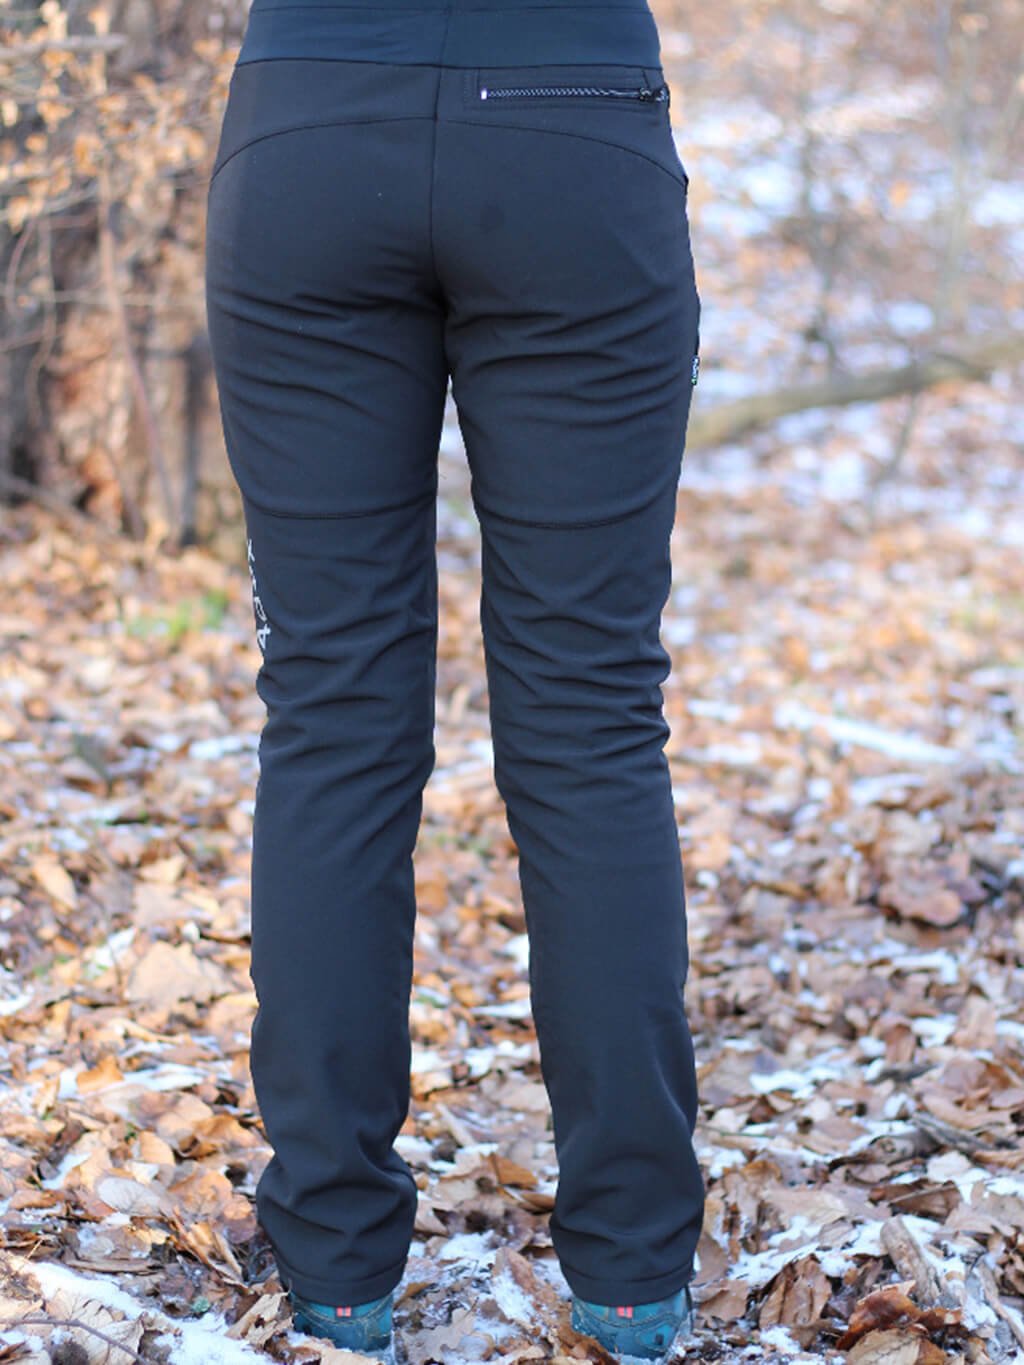 Dámské kalhoty ZIMNÍ - černé 4dox